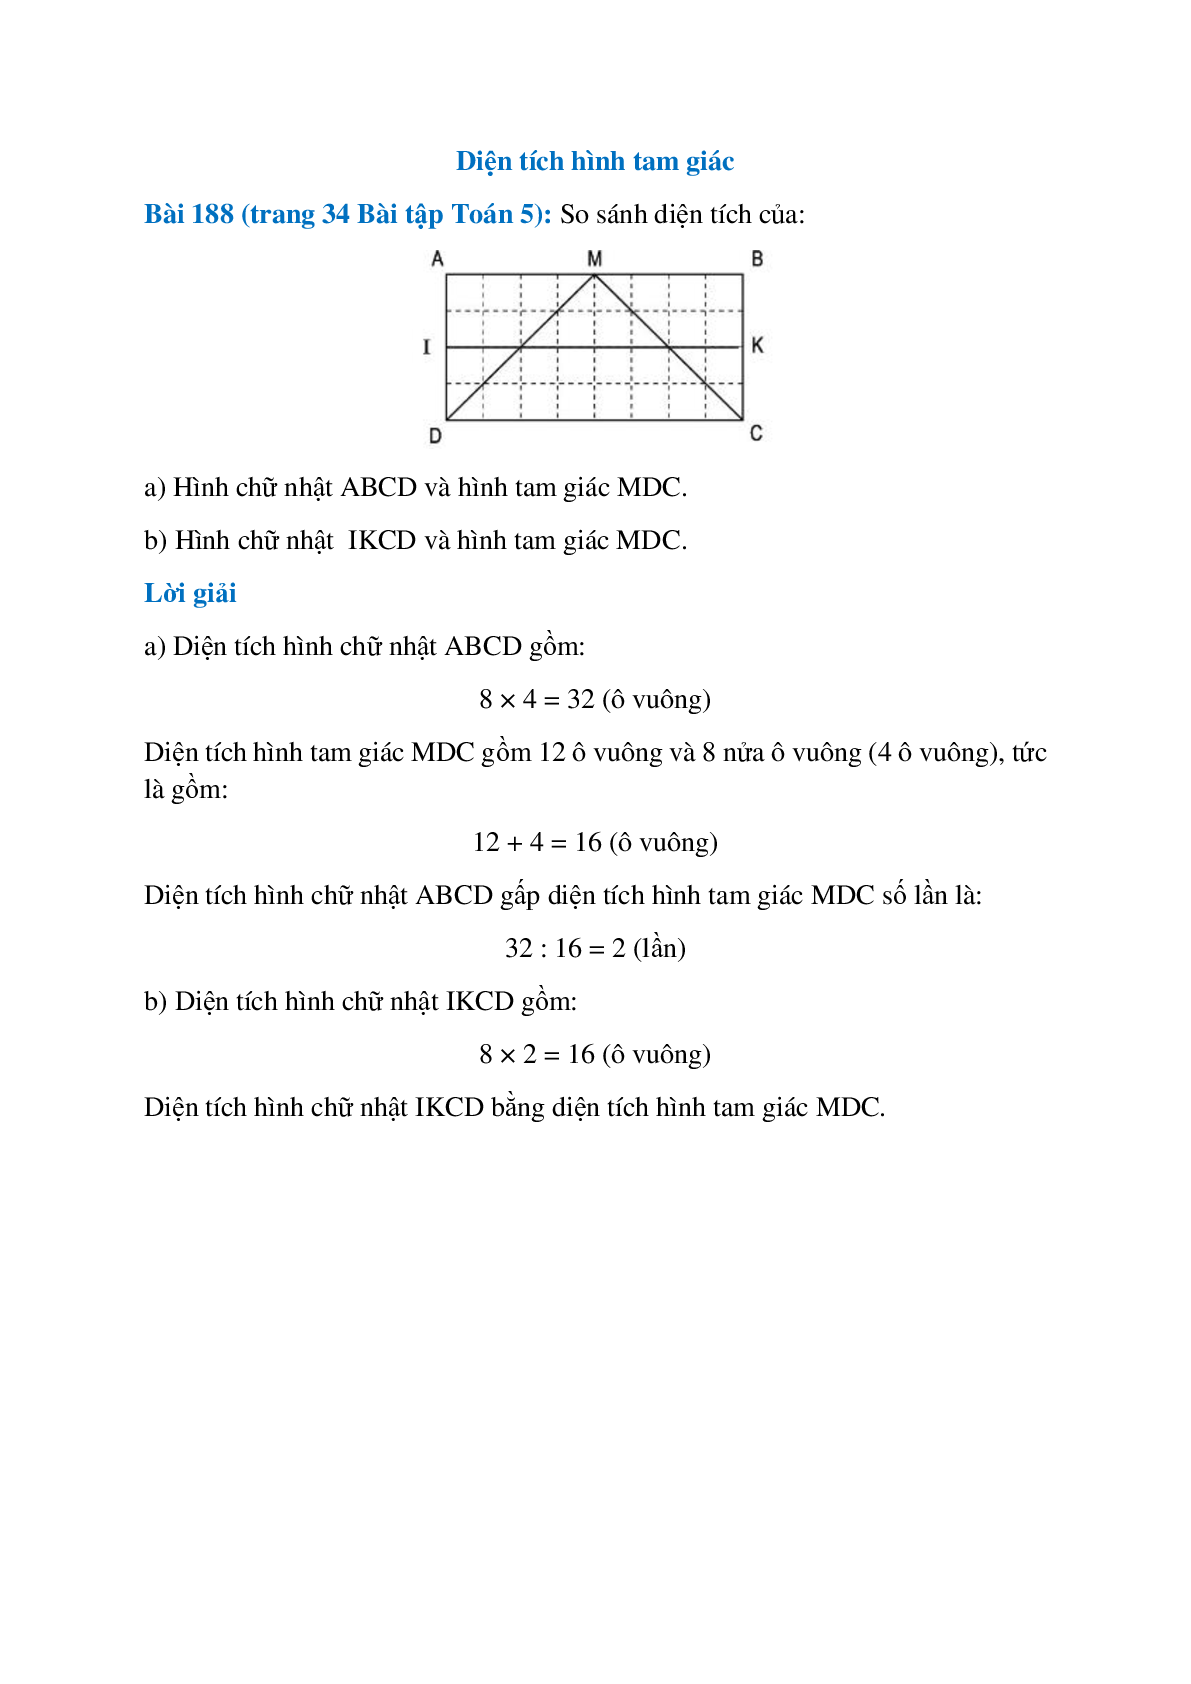 So sánh diện tích của: Hình chữ nhật ABCD và hình tam giác MDC (trang 1)